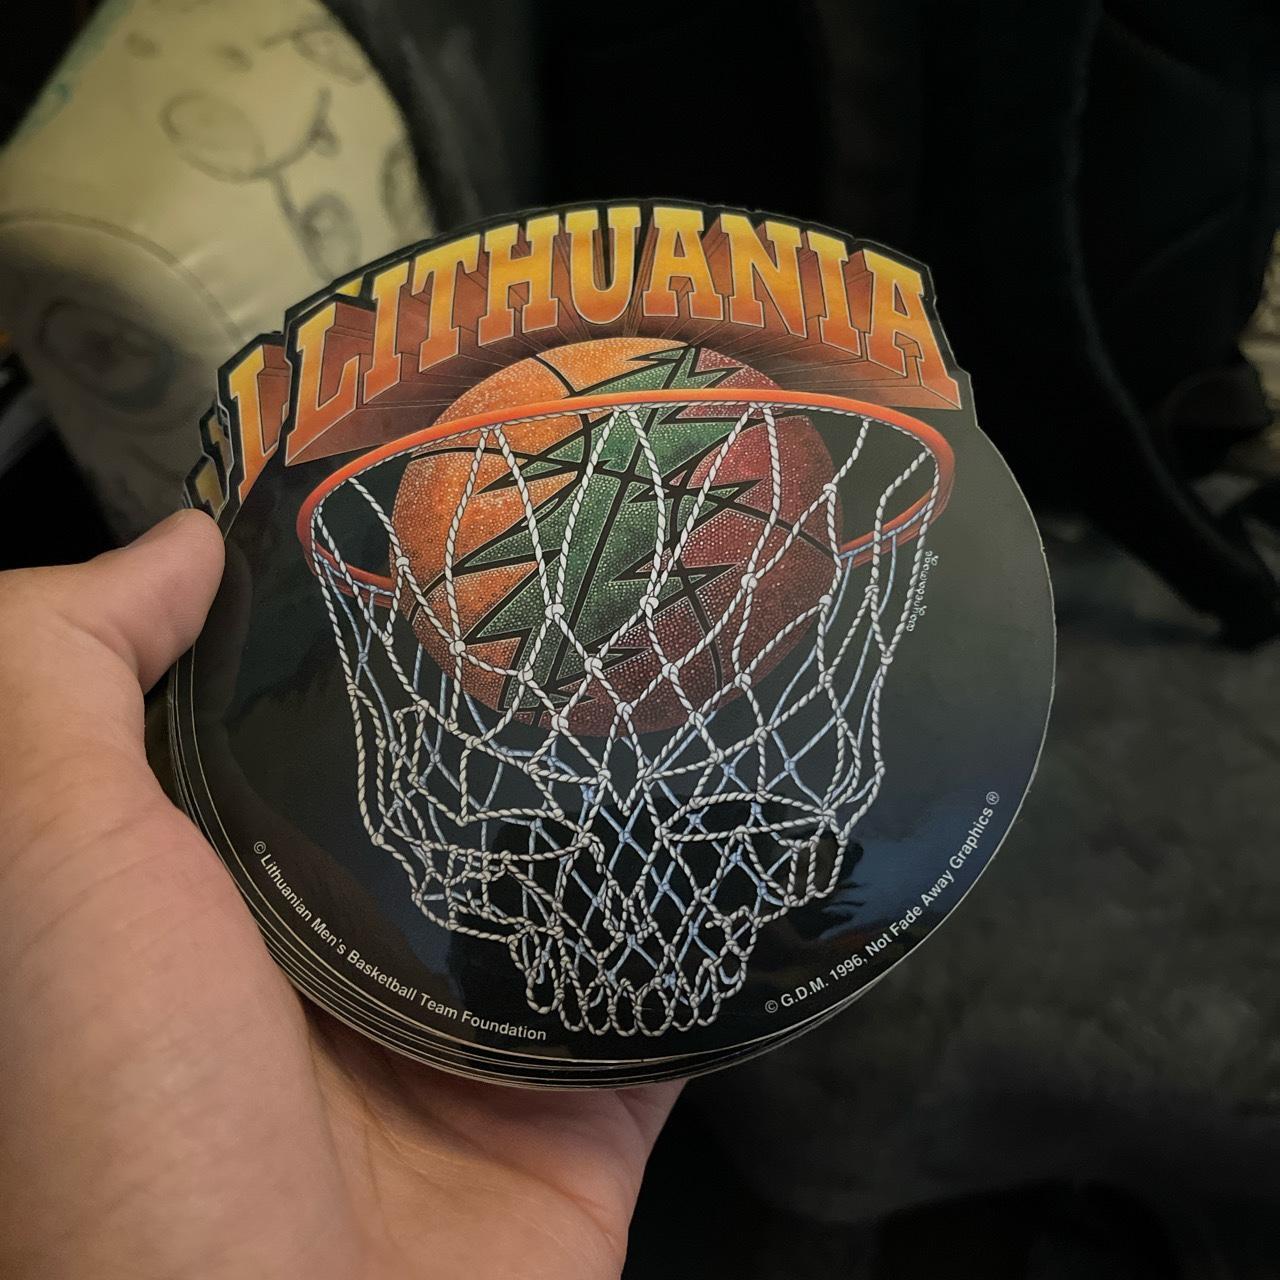 lithuania basketball 1996